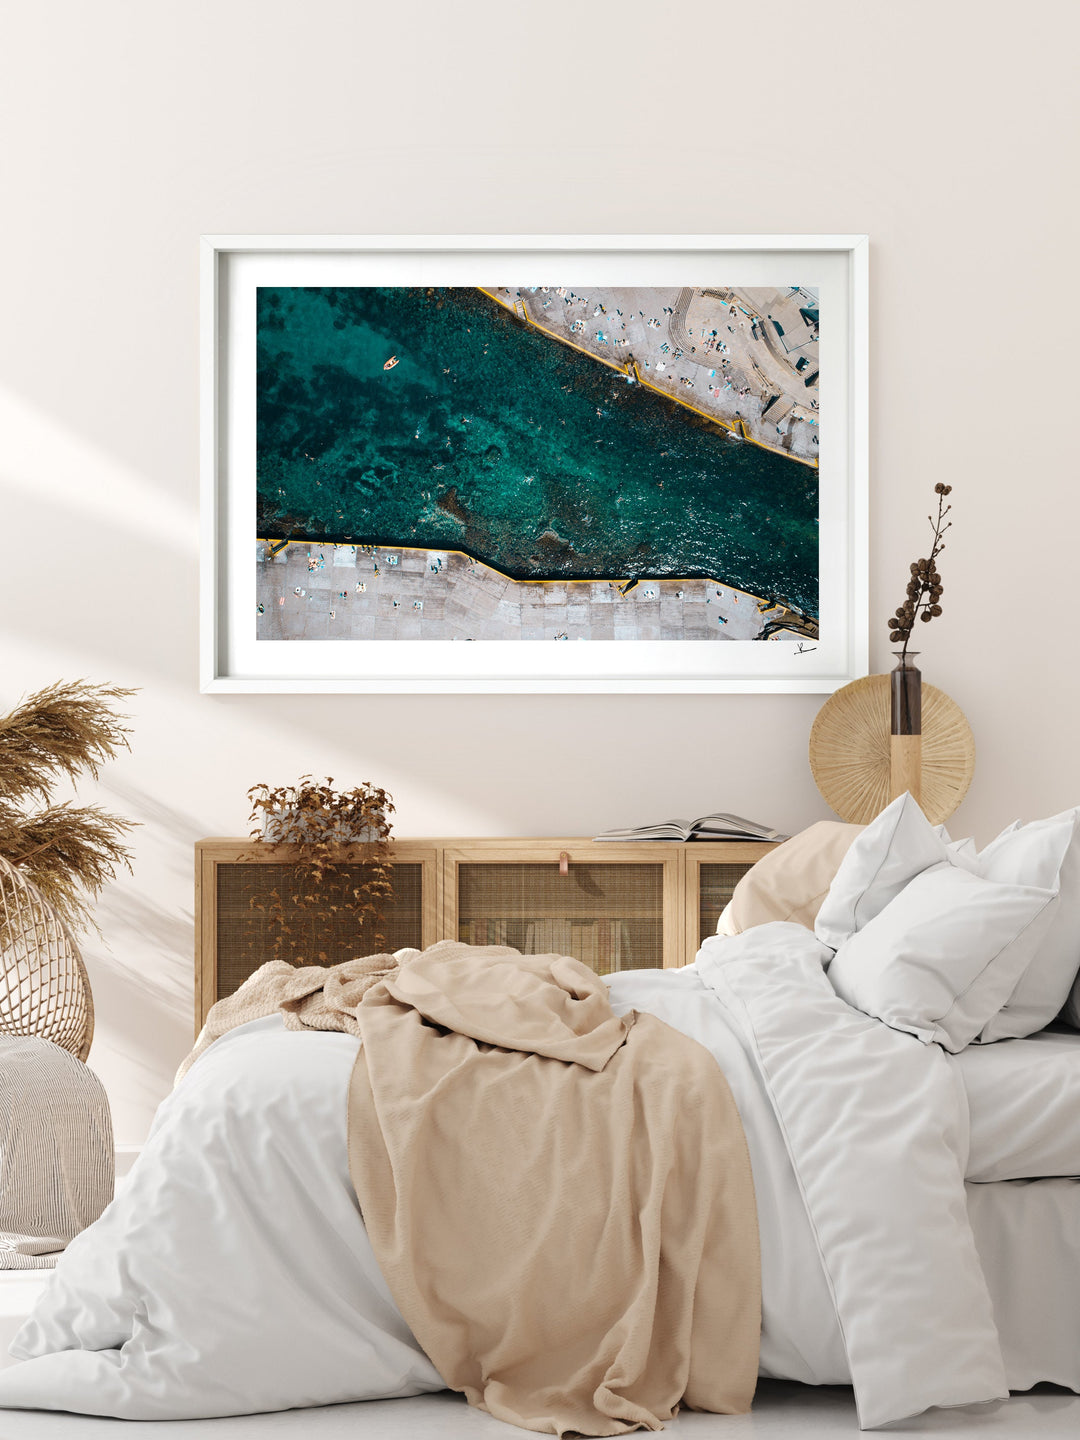 Clovelly Beach 02 - Australia Unseen - Wall Art Print